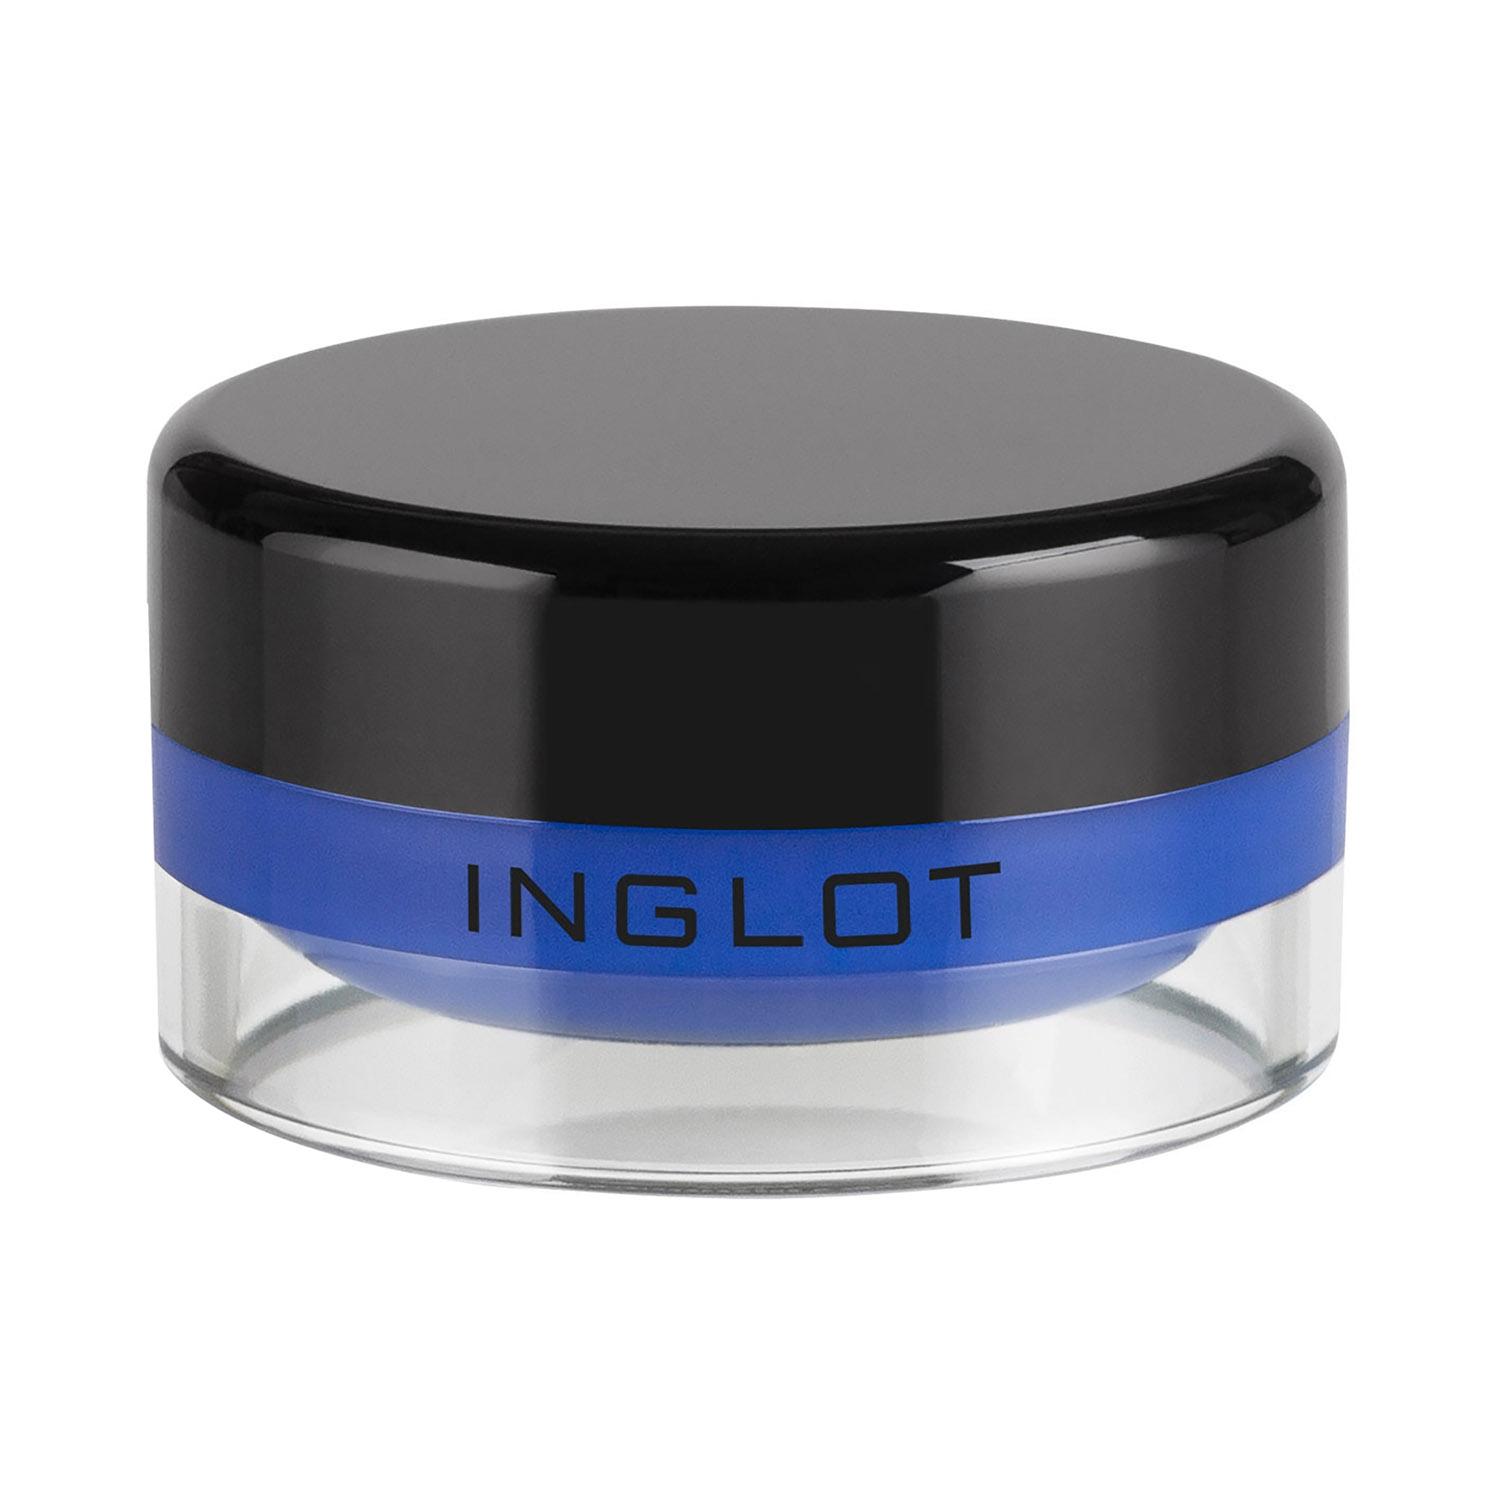 inglot amc eyeliner gel - 67 blue (5.5g)